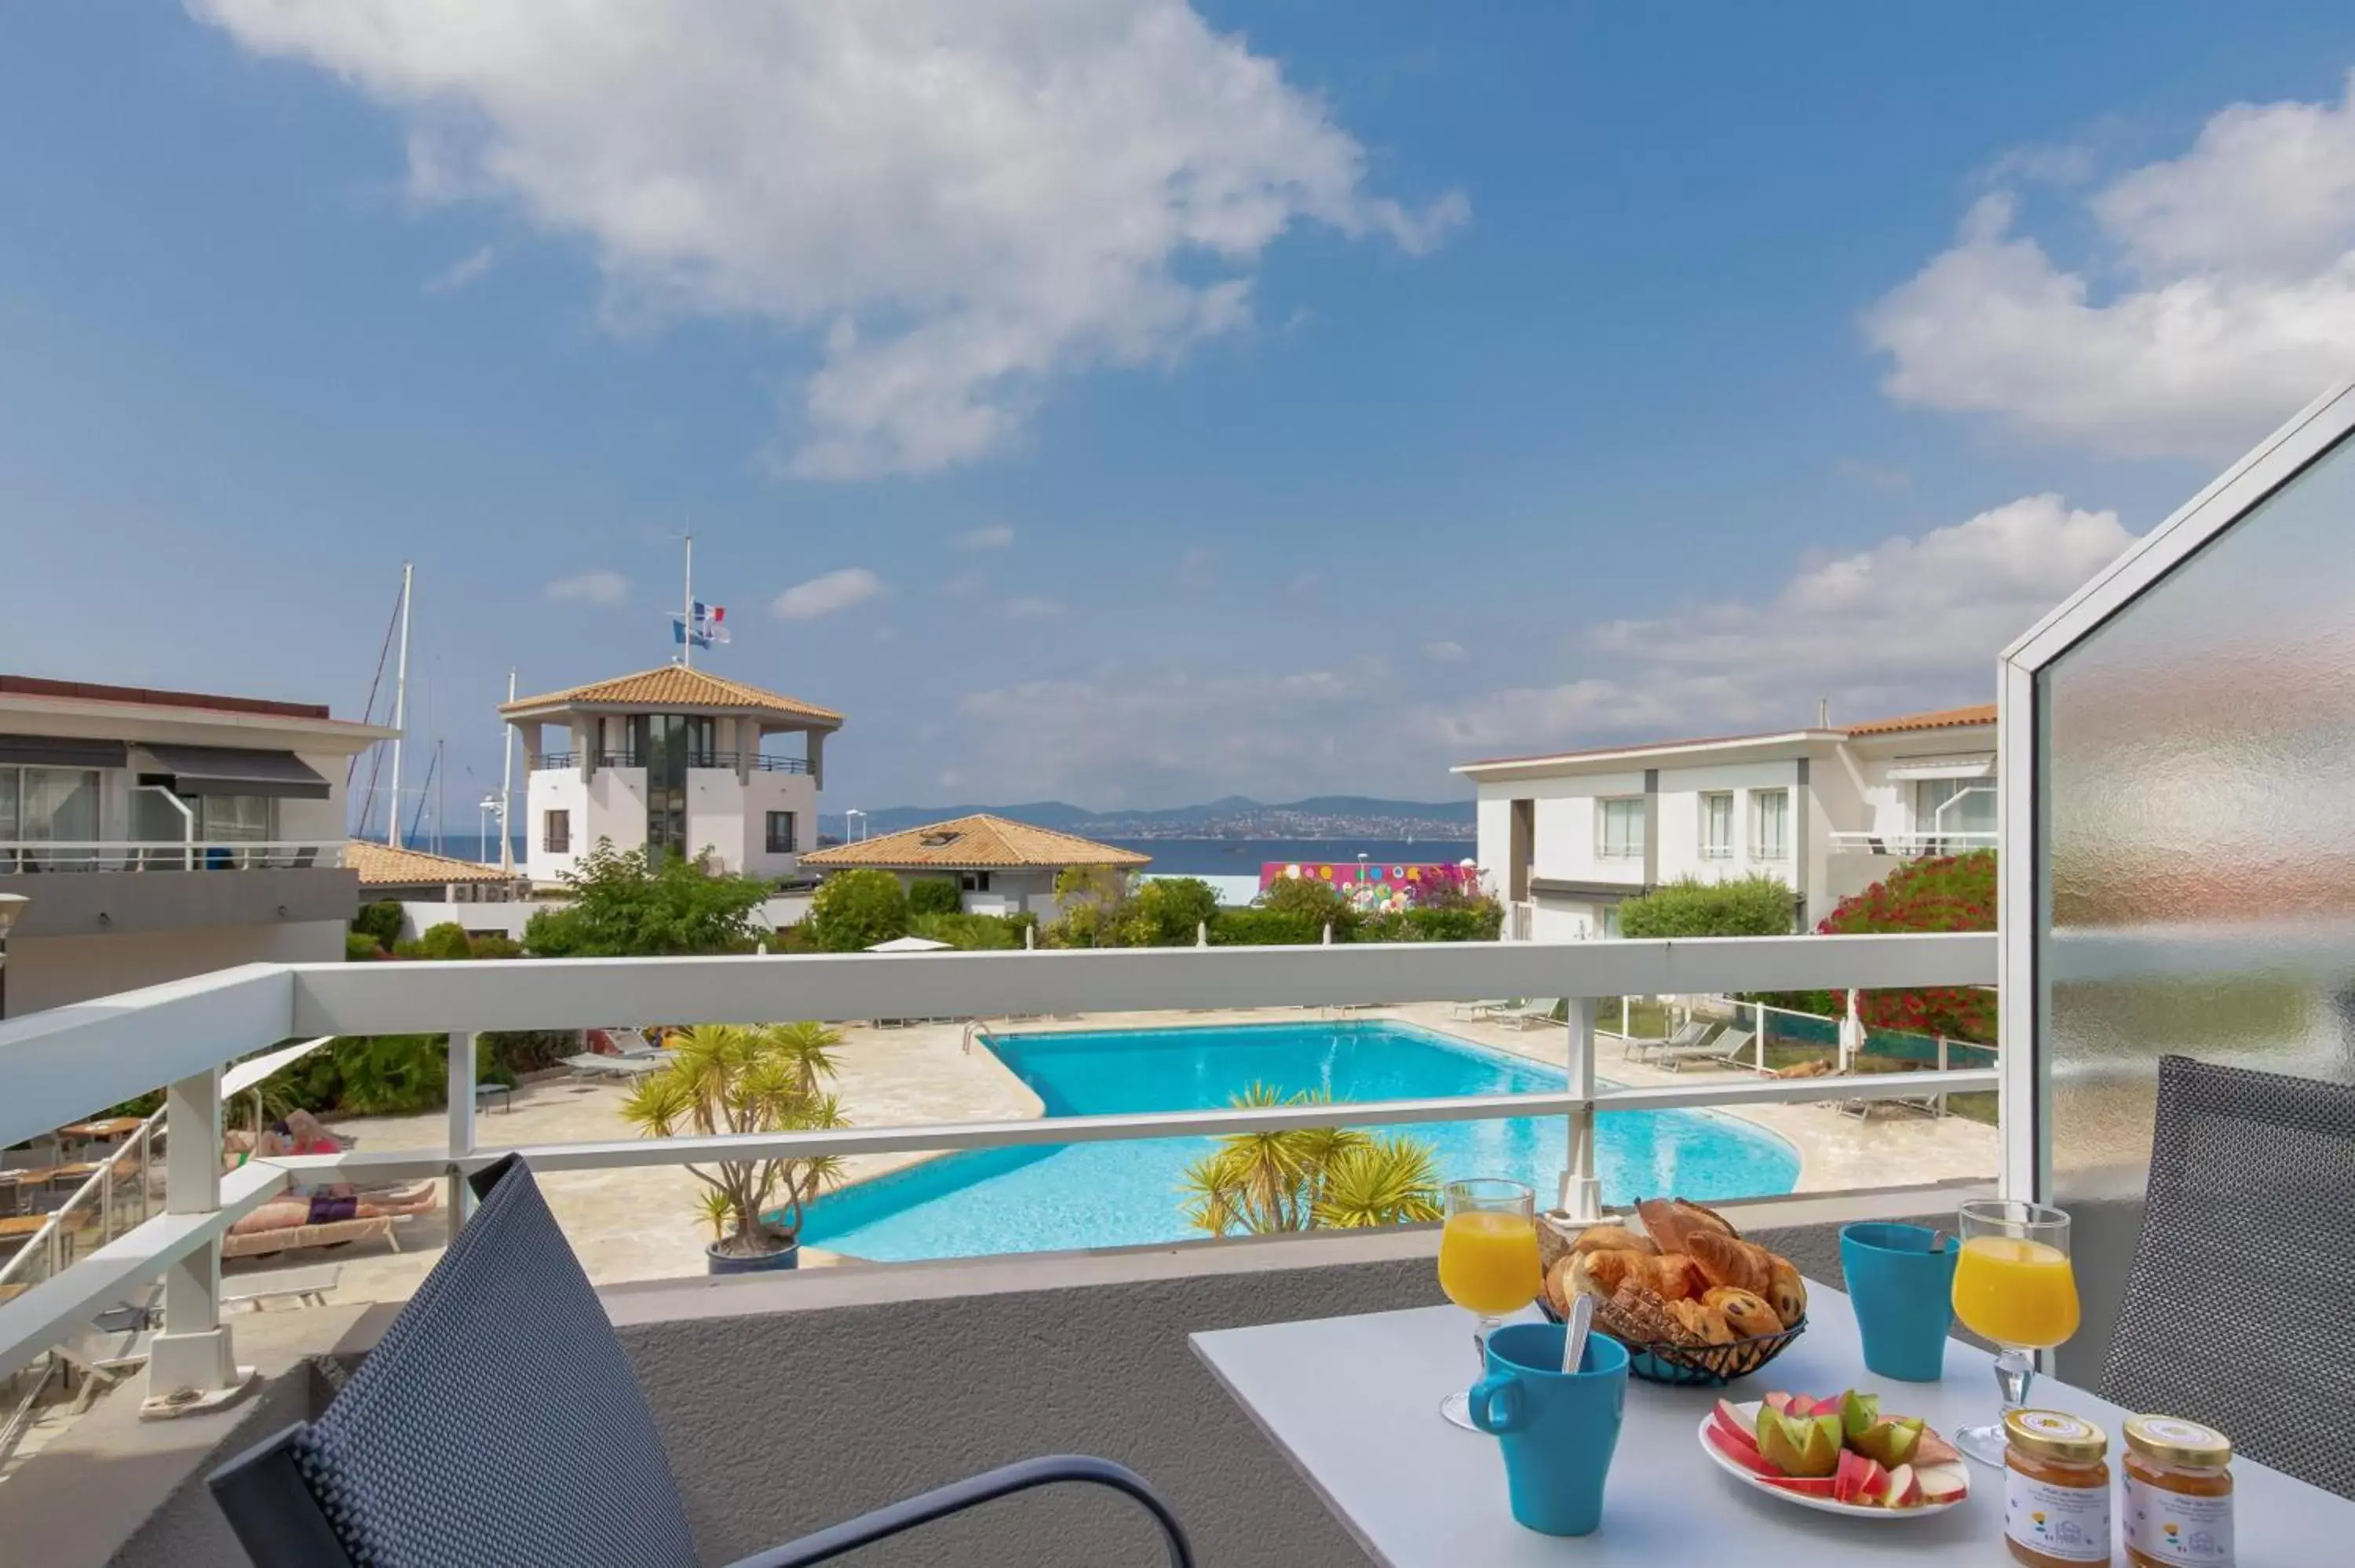 Balcony/Terrace, Swimming Pool in Best Western Plus La Marina